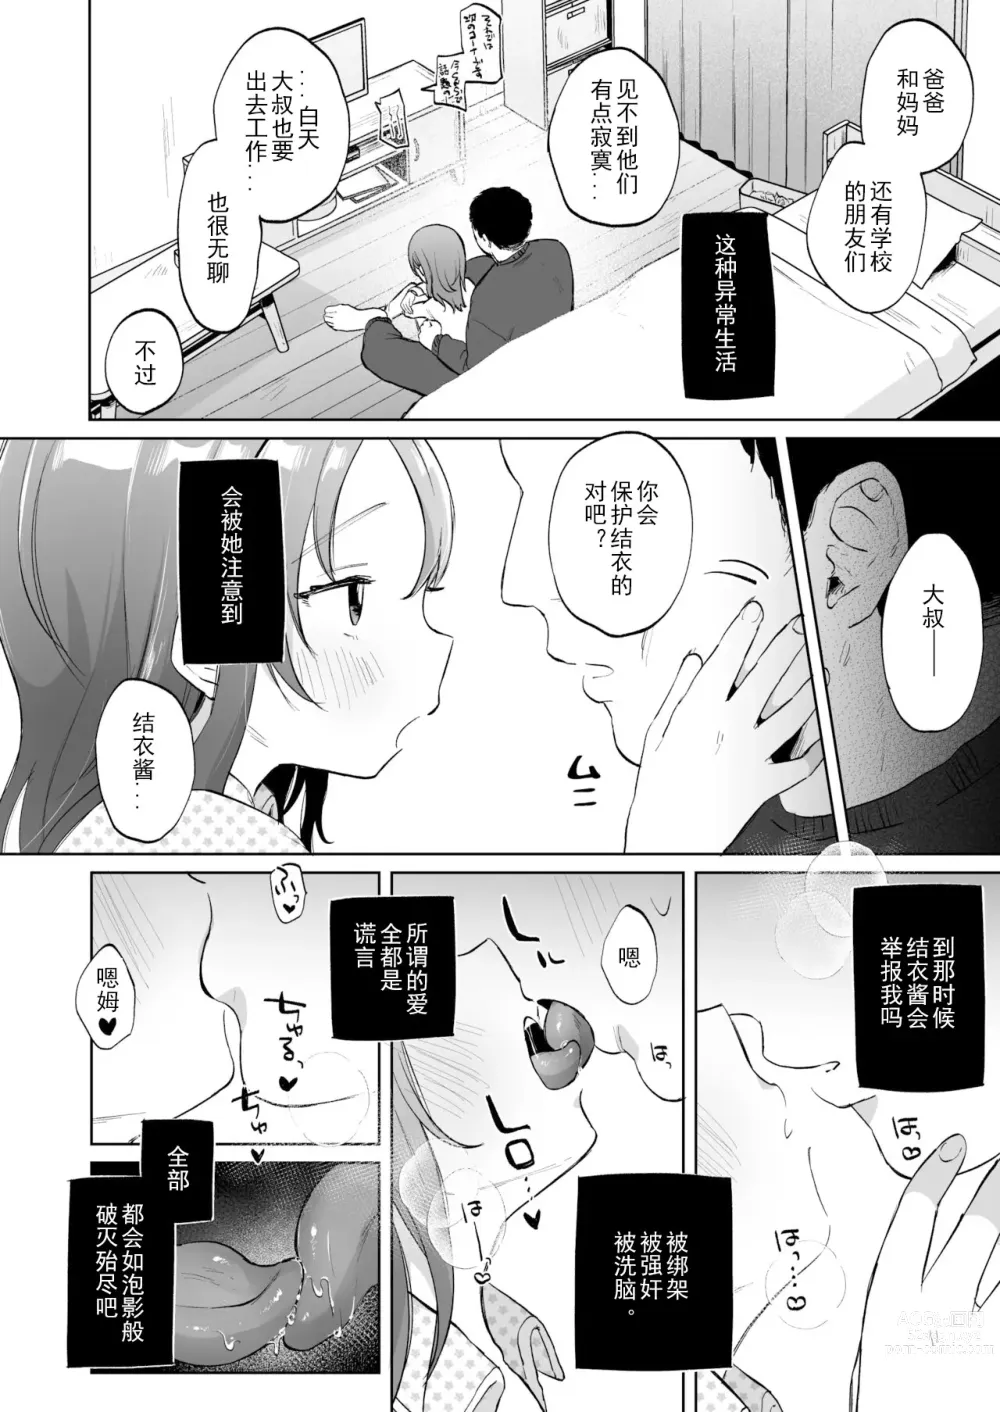 Page 23 of manga Yui wa Chanto Shiawase da yo